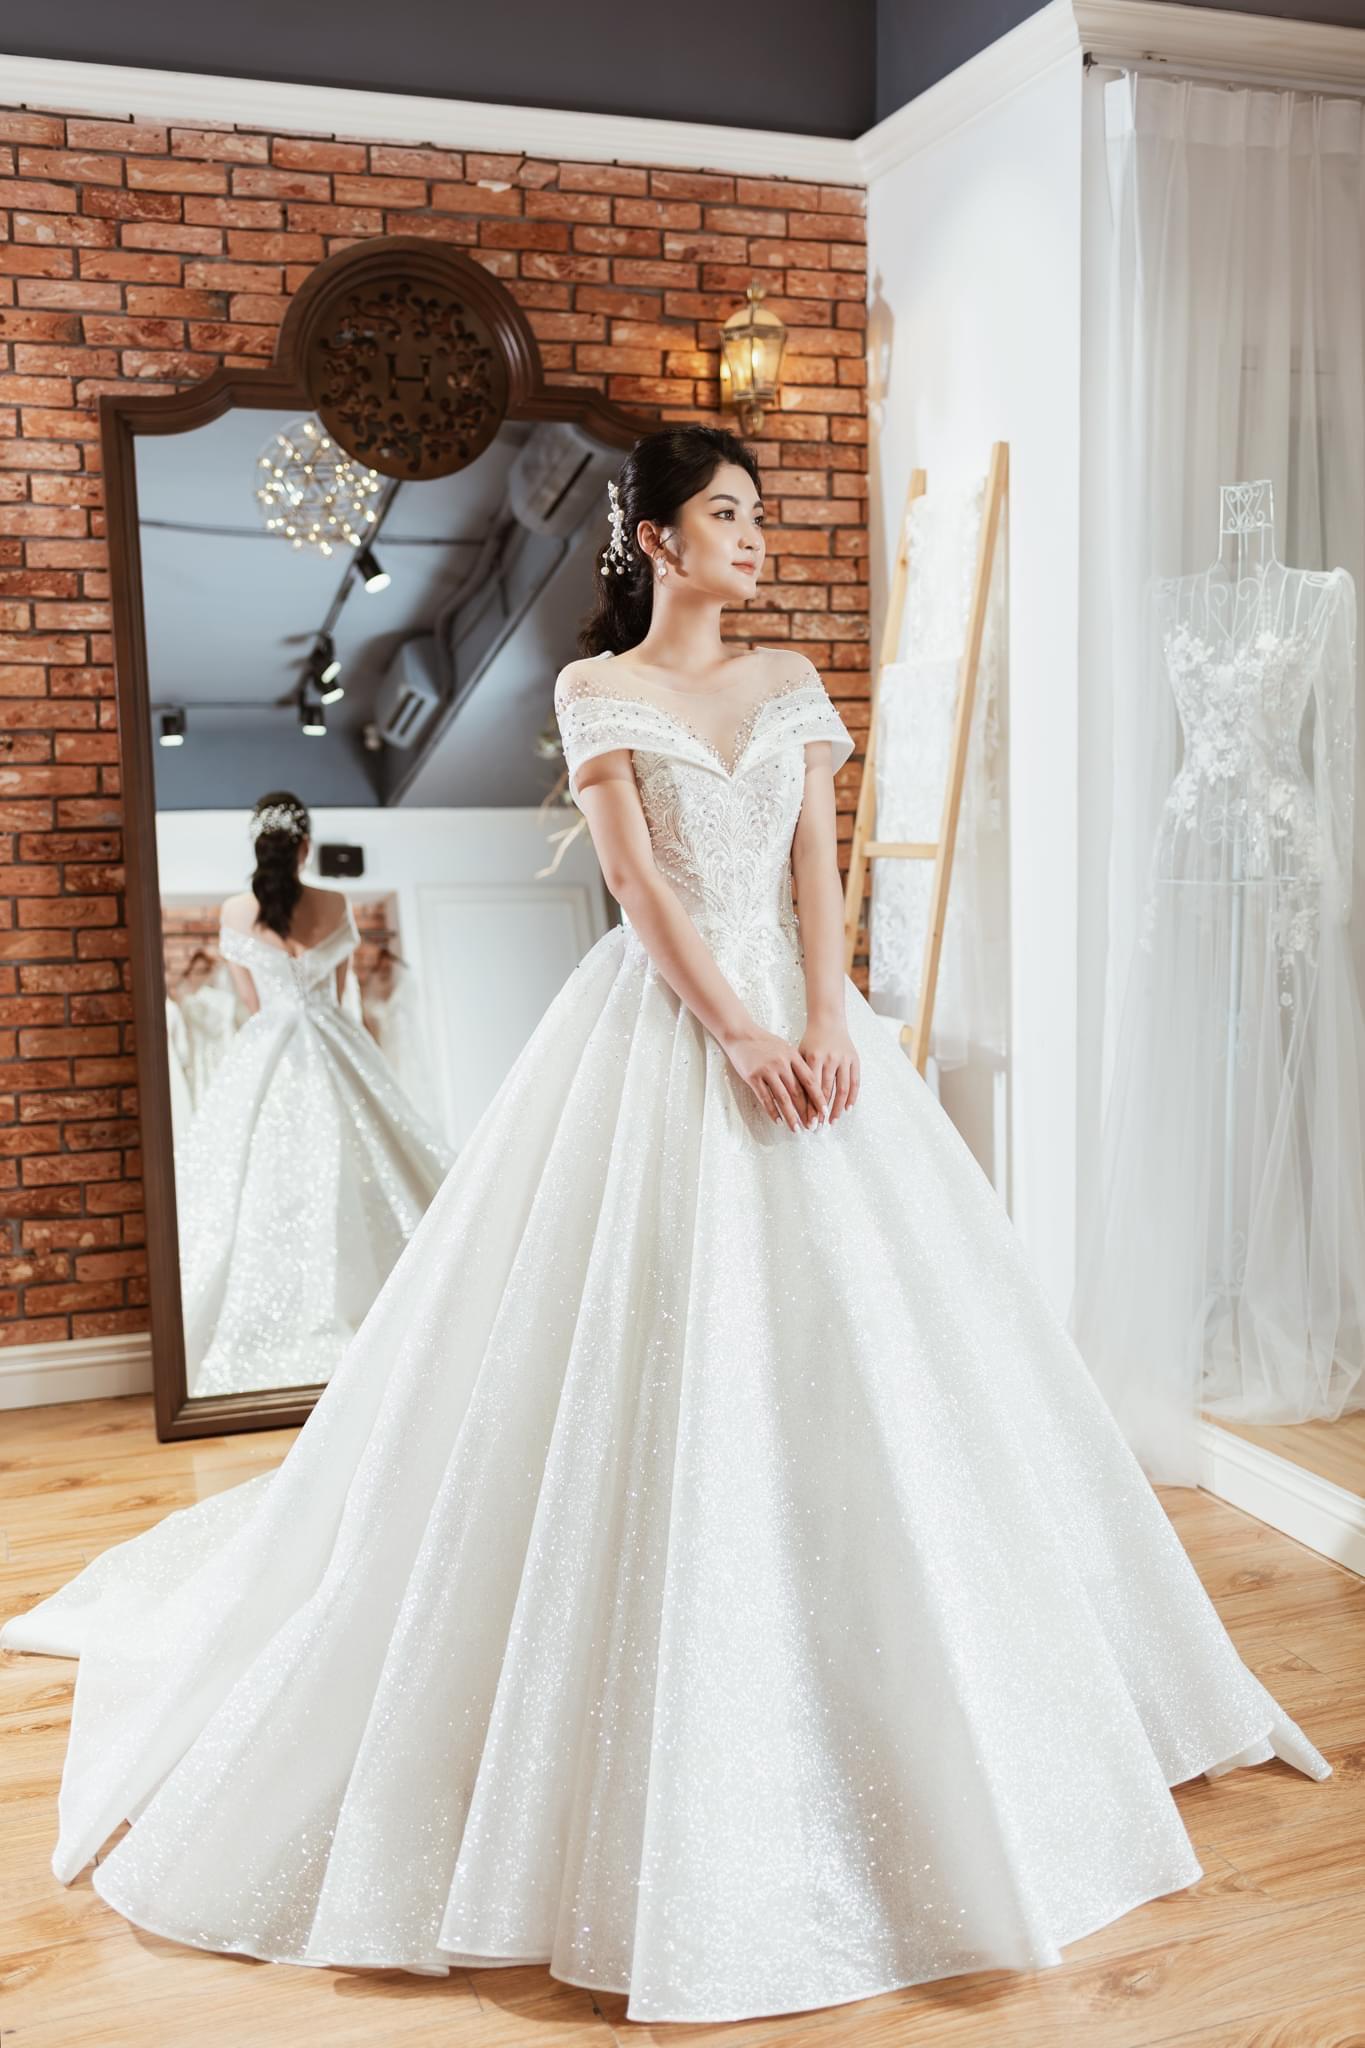 Nguyễn Ngọc Nữ  Top 10 Hoa Hậu Hoàn Vũ hóa cô dâu trong BST váy cưới mới  của Bella Bridal dưới góc máy của TuArt  TuArtsNet